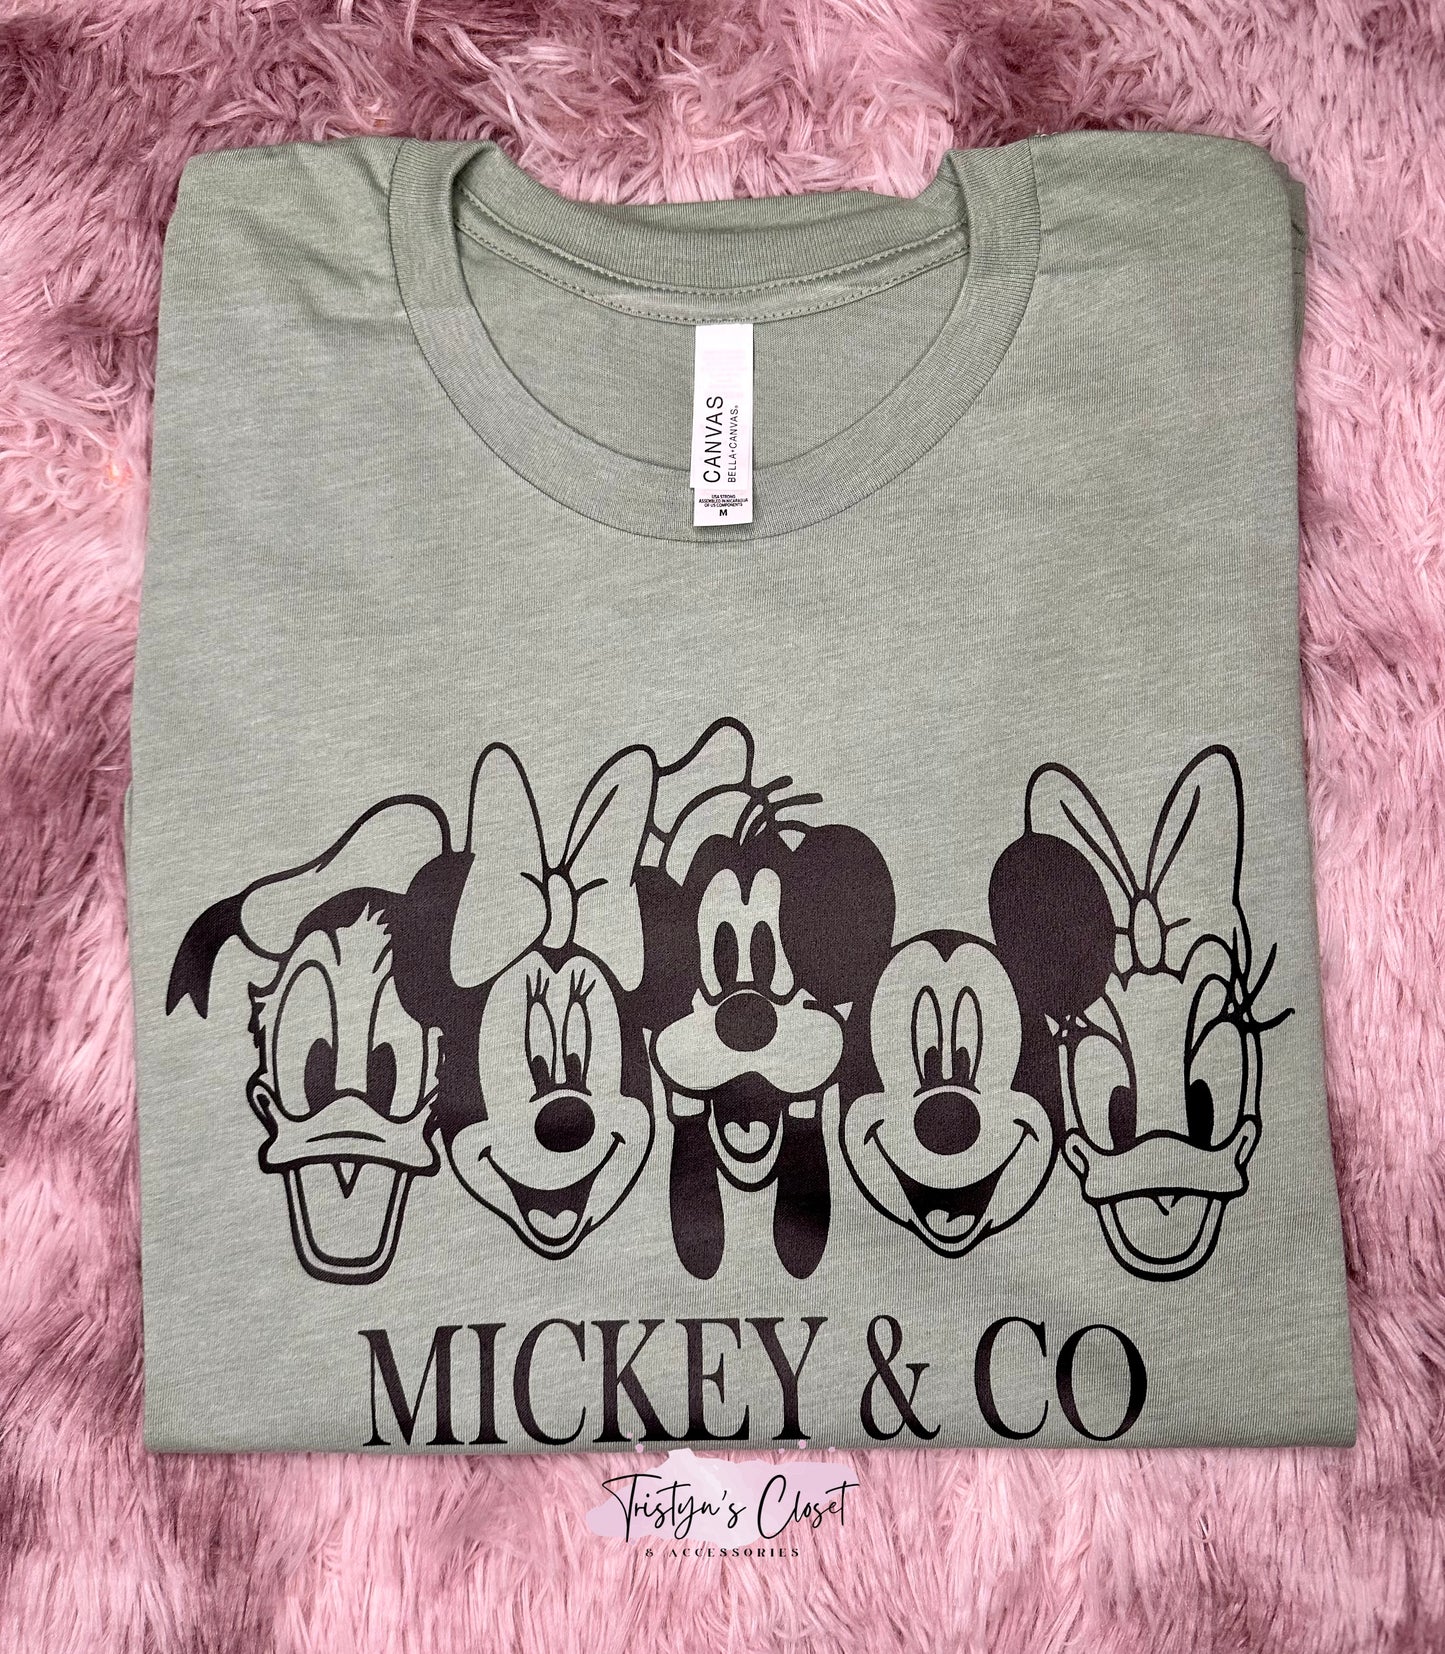 Mickey & Co Tee